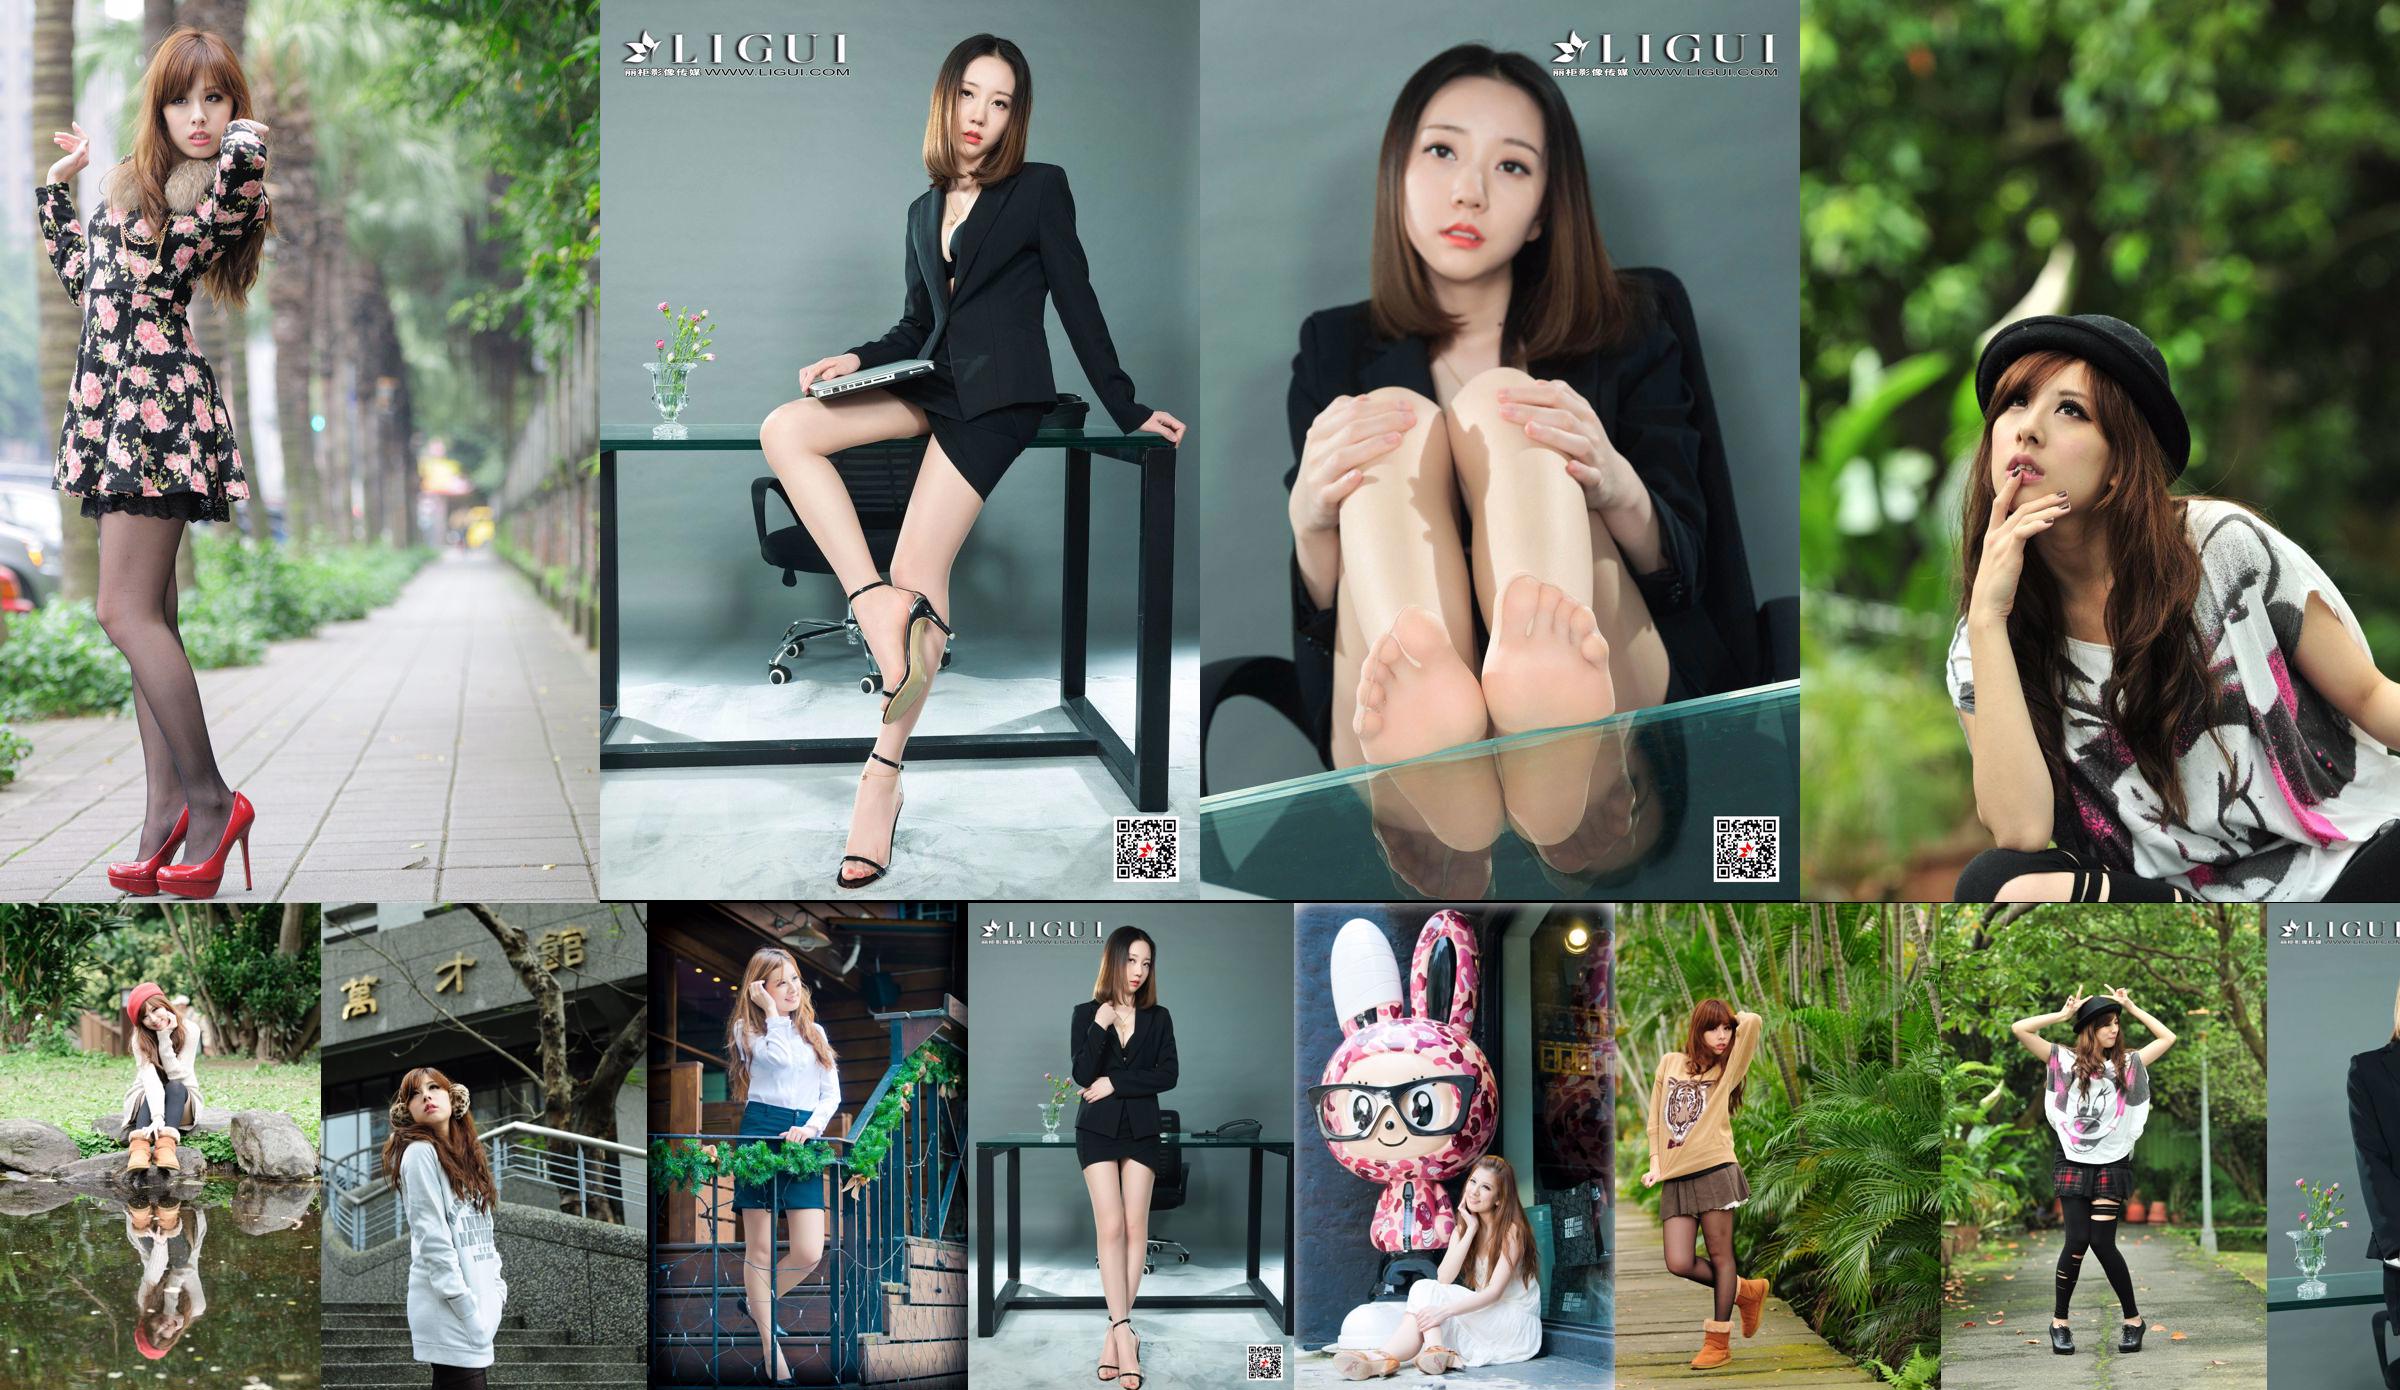 La hermana taiwanesa Xiaomi Kate su colección de fotos "Pequeñas imágenes frescas al aire libre" No.2dd372 Página 1